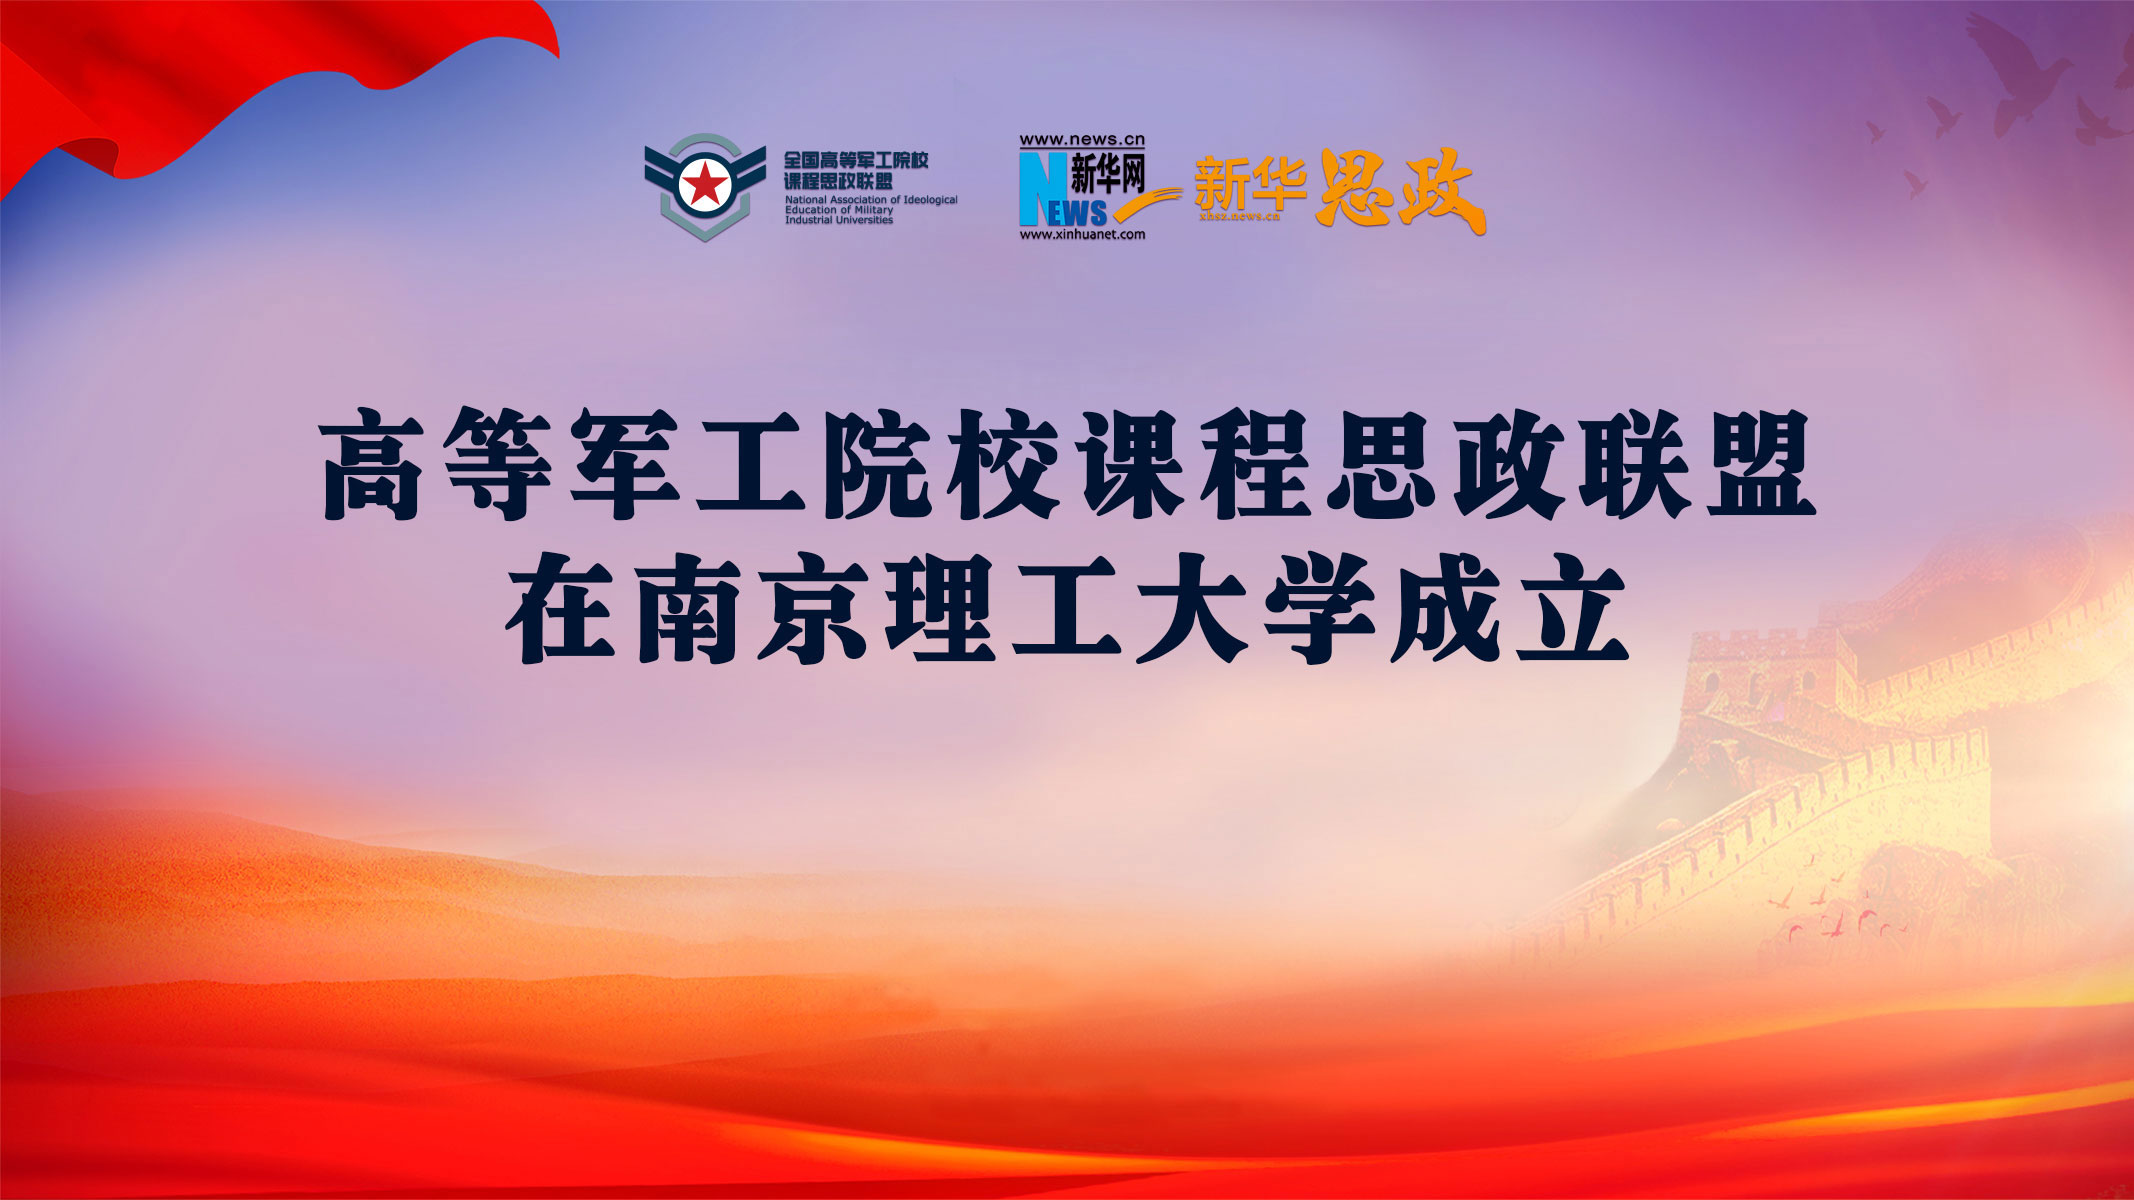 高等军工院校课程思政联盟在南京理工大学成立